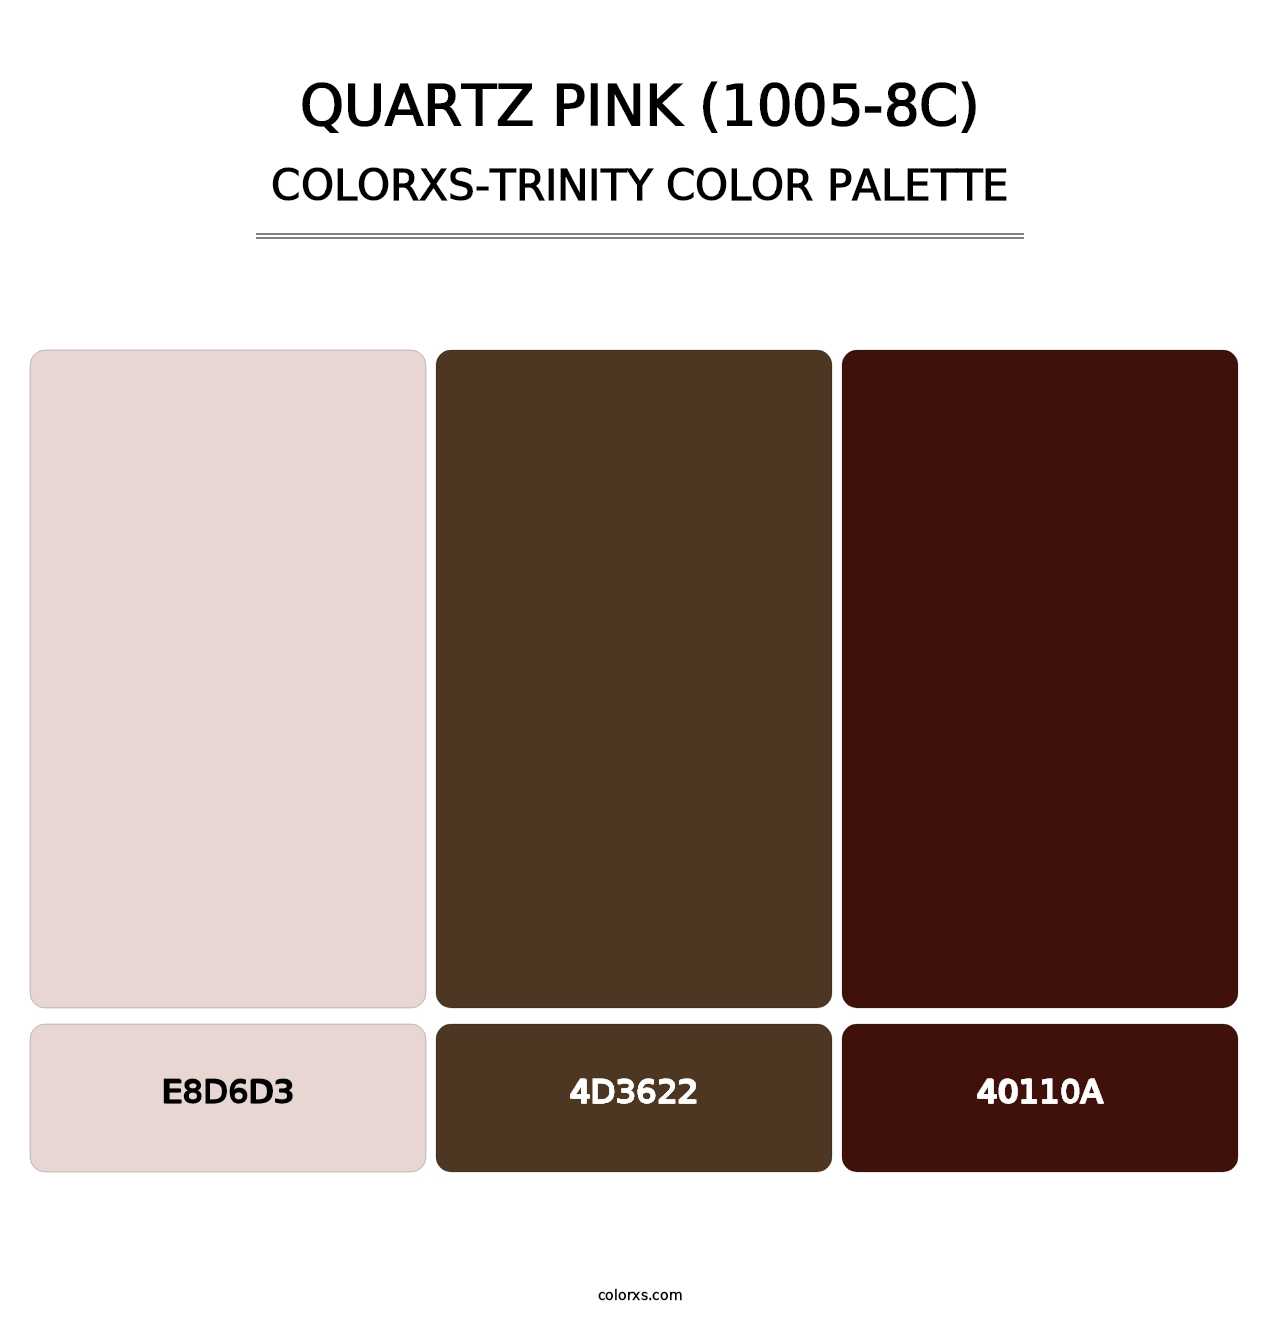 Quartz Pink (1005-8C) - Colorxs Trinity Palette